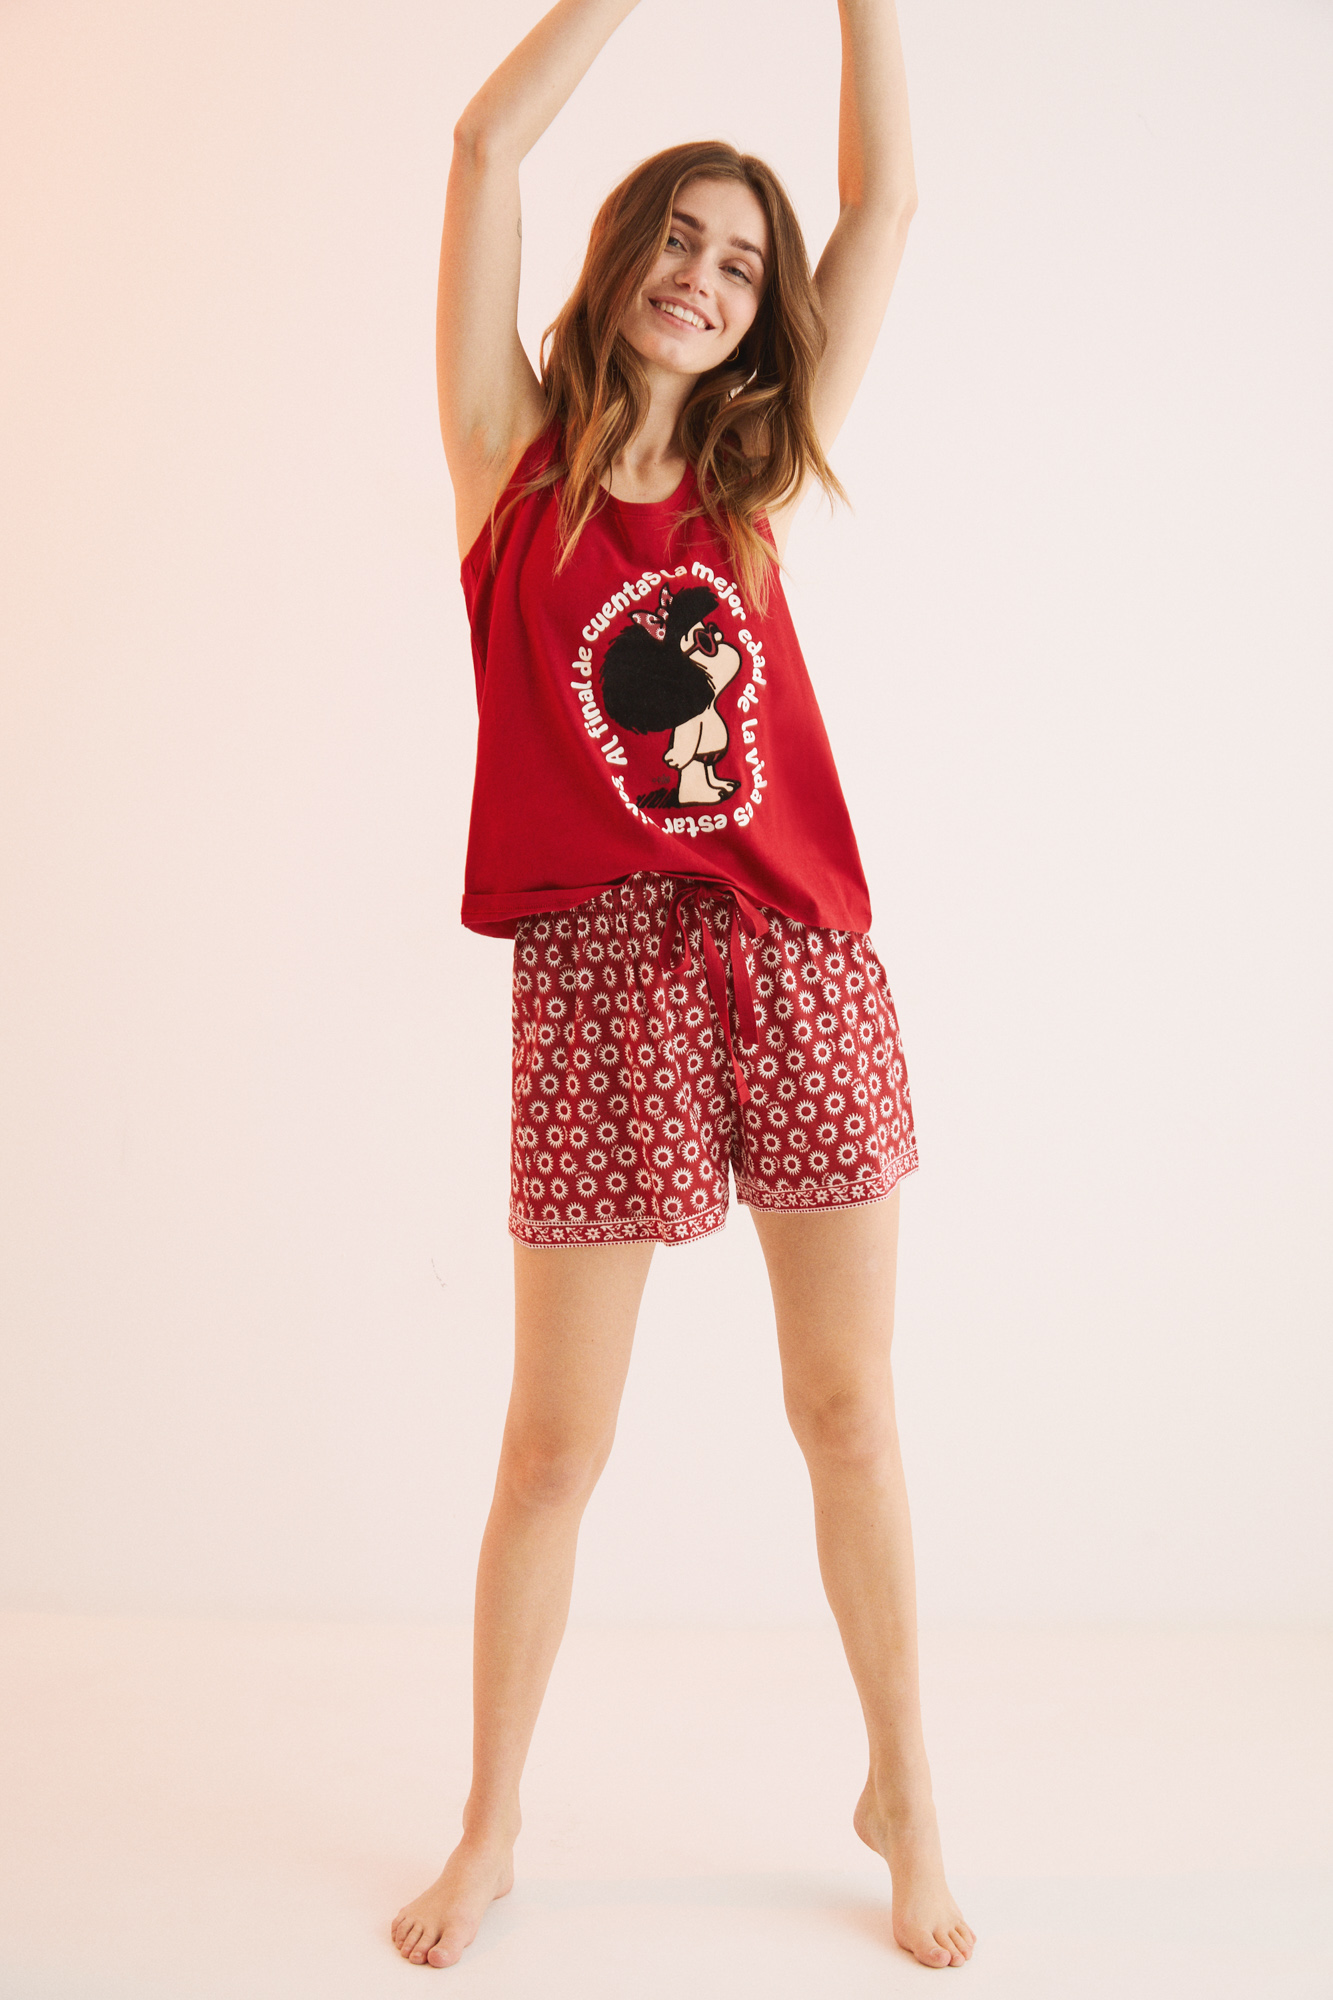 corto 100% algodón Mafalda rojo | Ropa dormir de mujer y homewear | WomenSecret